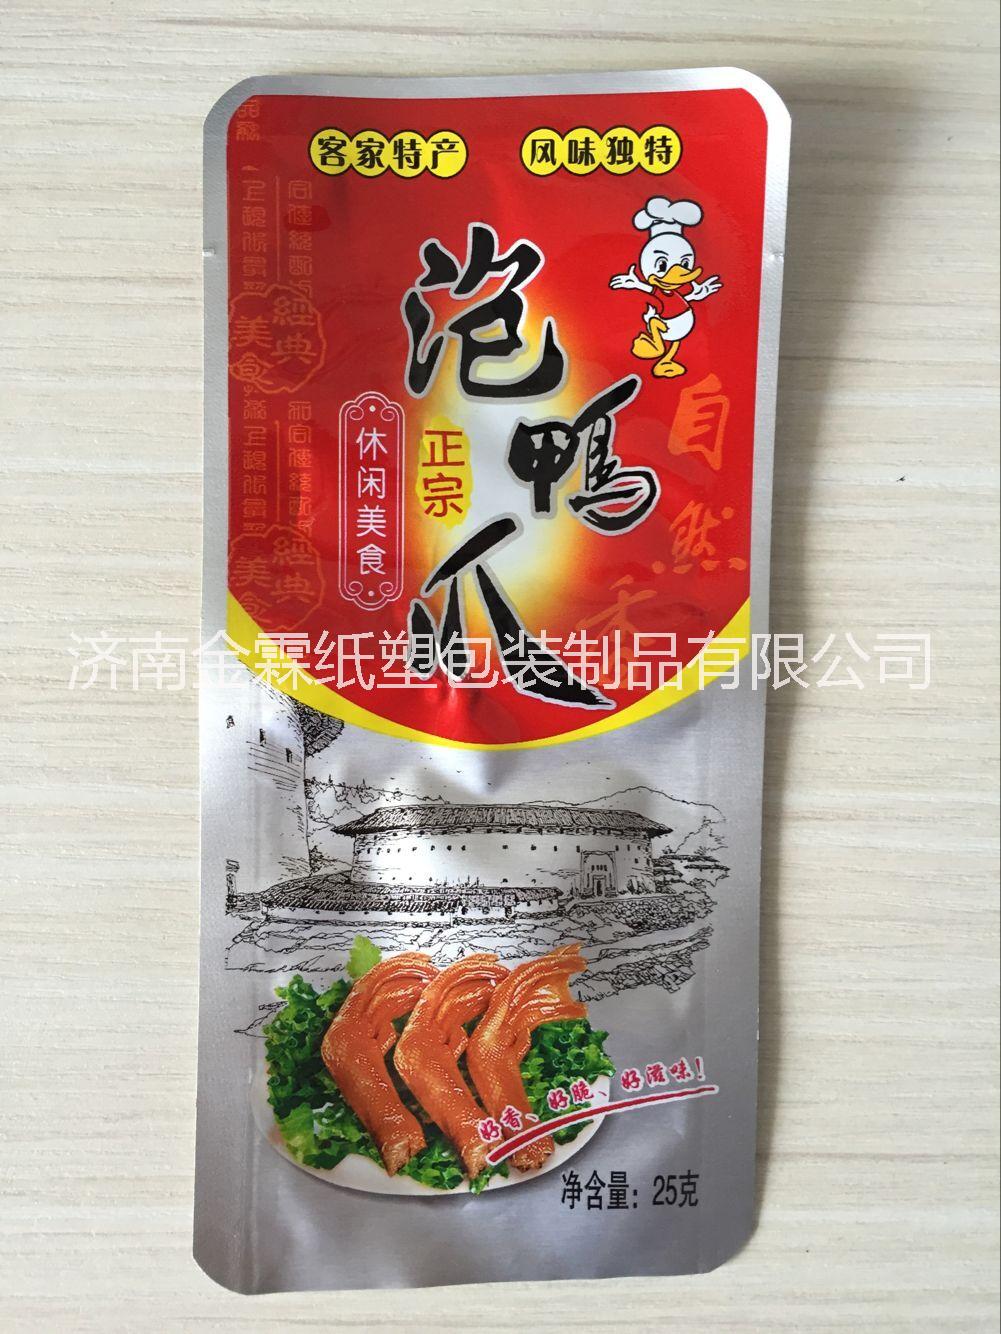 厂家直销徐州泉山区肉食品真空包装,高温蒸煮包装袋,可彩印